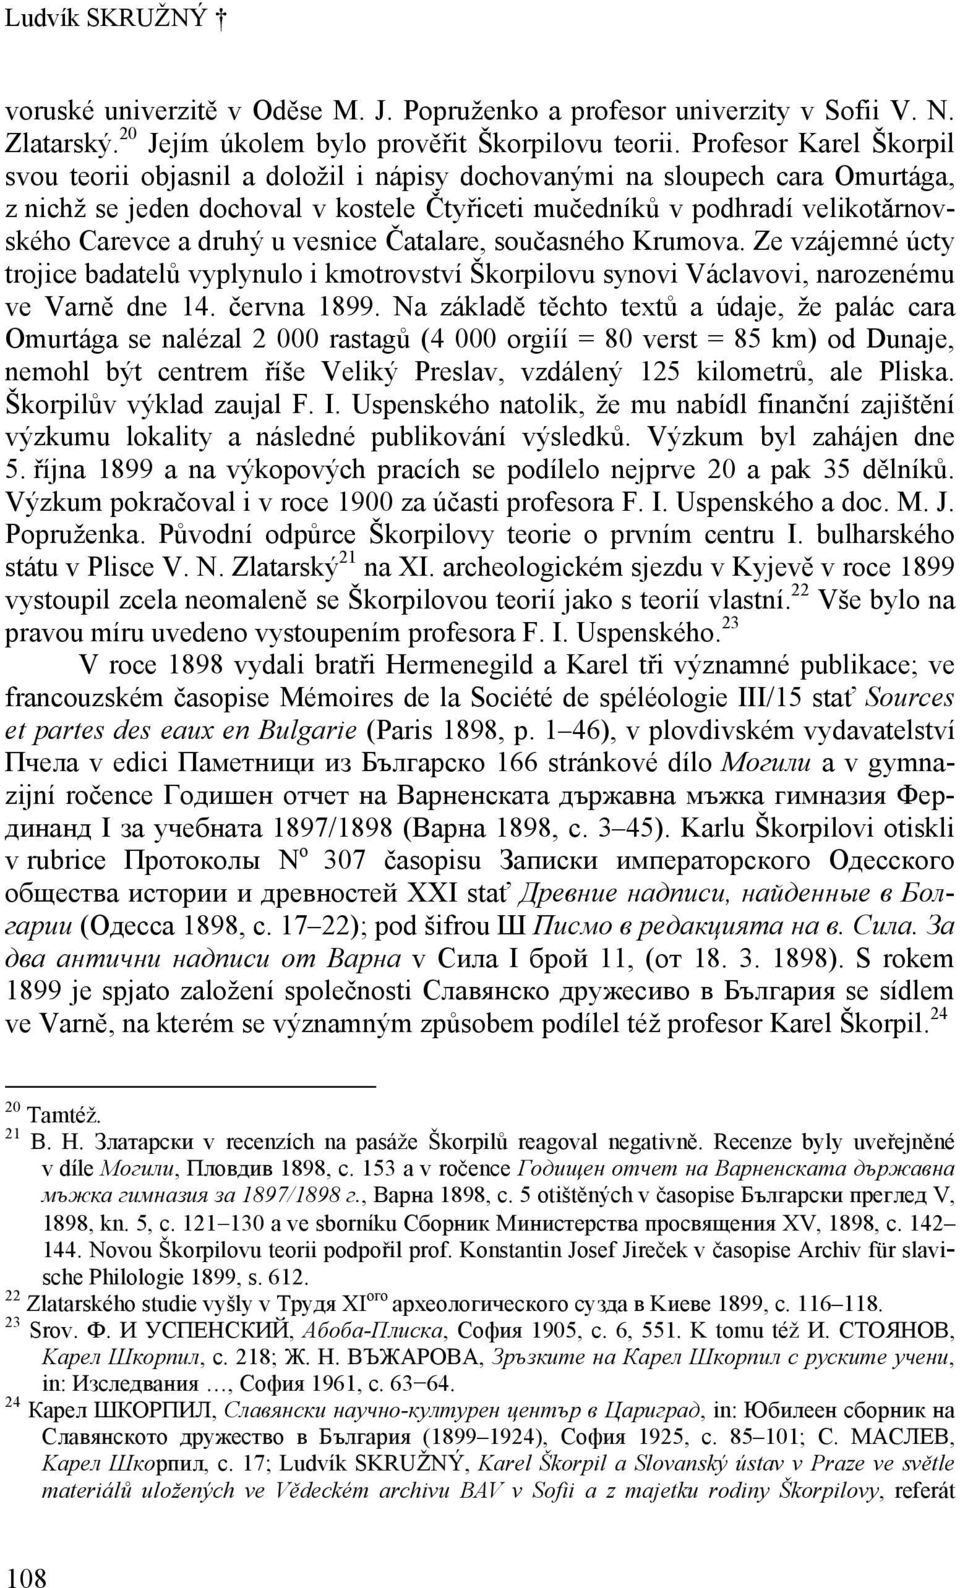 druhý u vesnice Čatalare, současného Krumova. Ze vzájemné úcty trojice badatelů vyplynulo i kmotrovství Škorpilovu synovi Václavovi, narozenému ve Varně dne 14. června 1899.